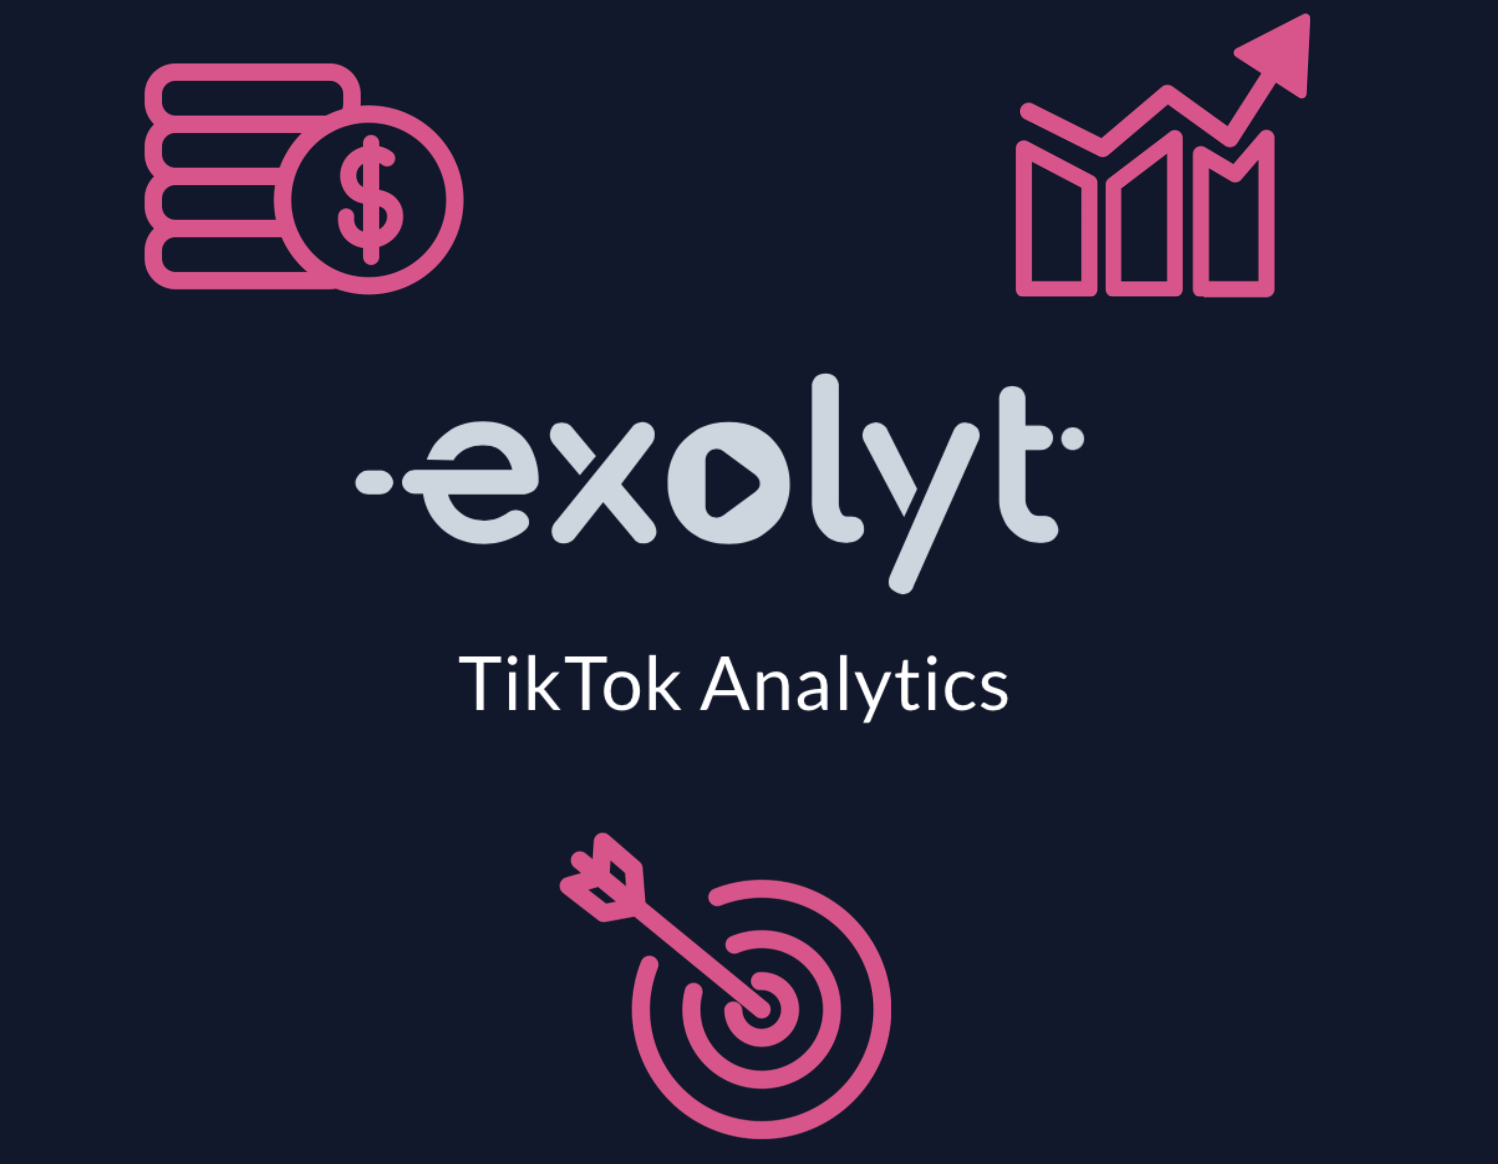 为什么媒体机构应该使用 Exolyt 进行 TikTok 分析